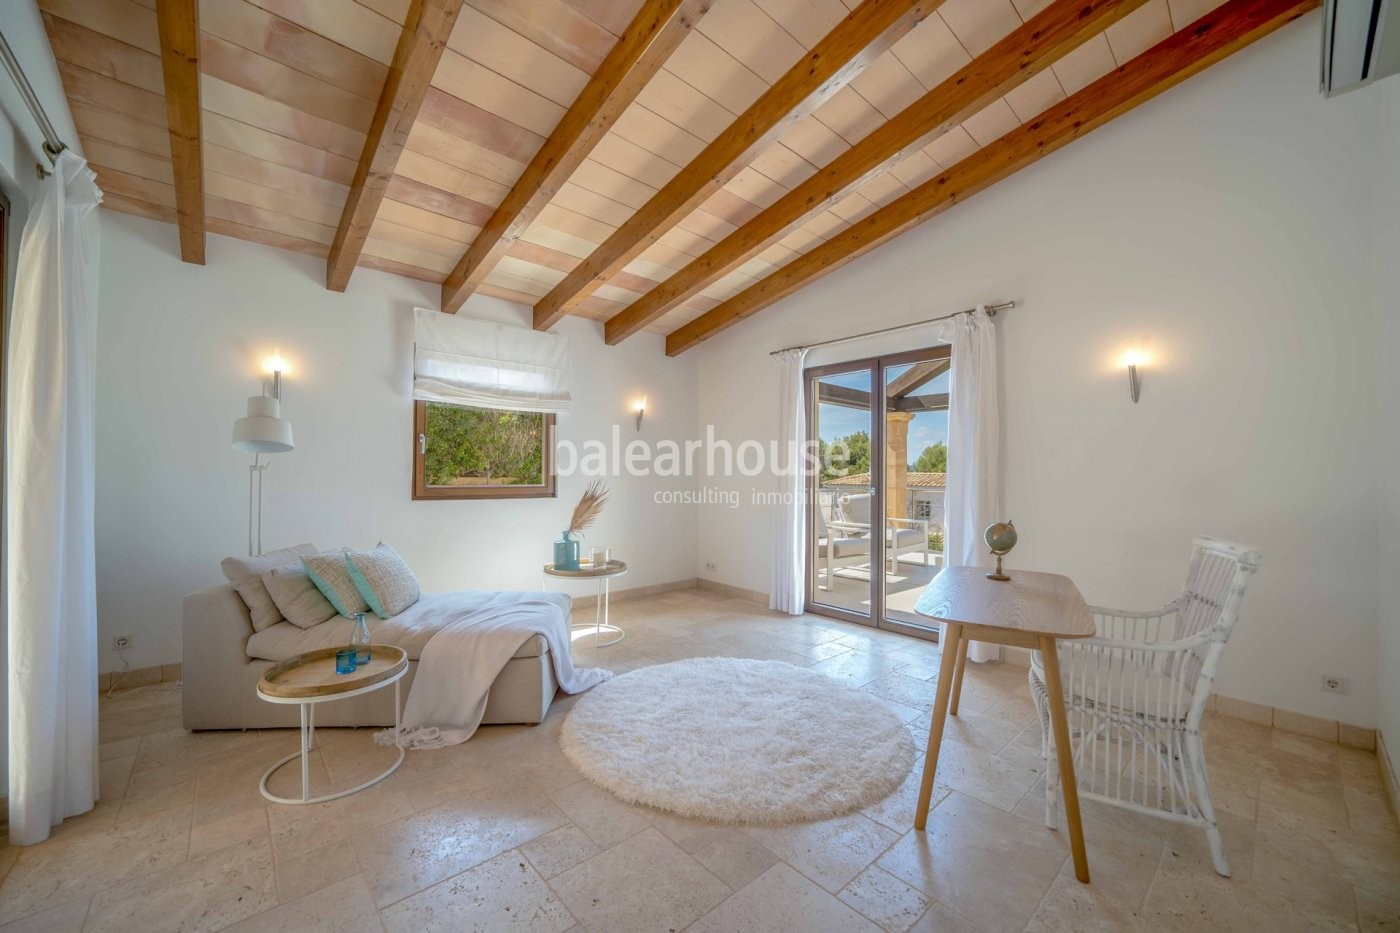 Villa mit eleganter und moderner mediterraner Architektur in Santa Ponsa mit Blick auf das Meer